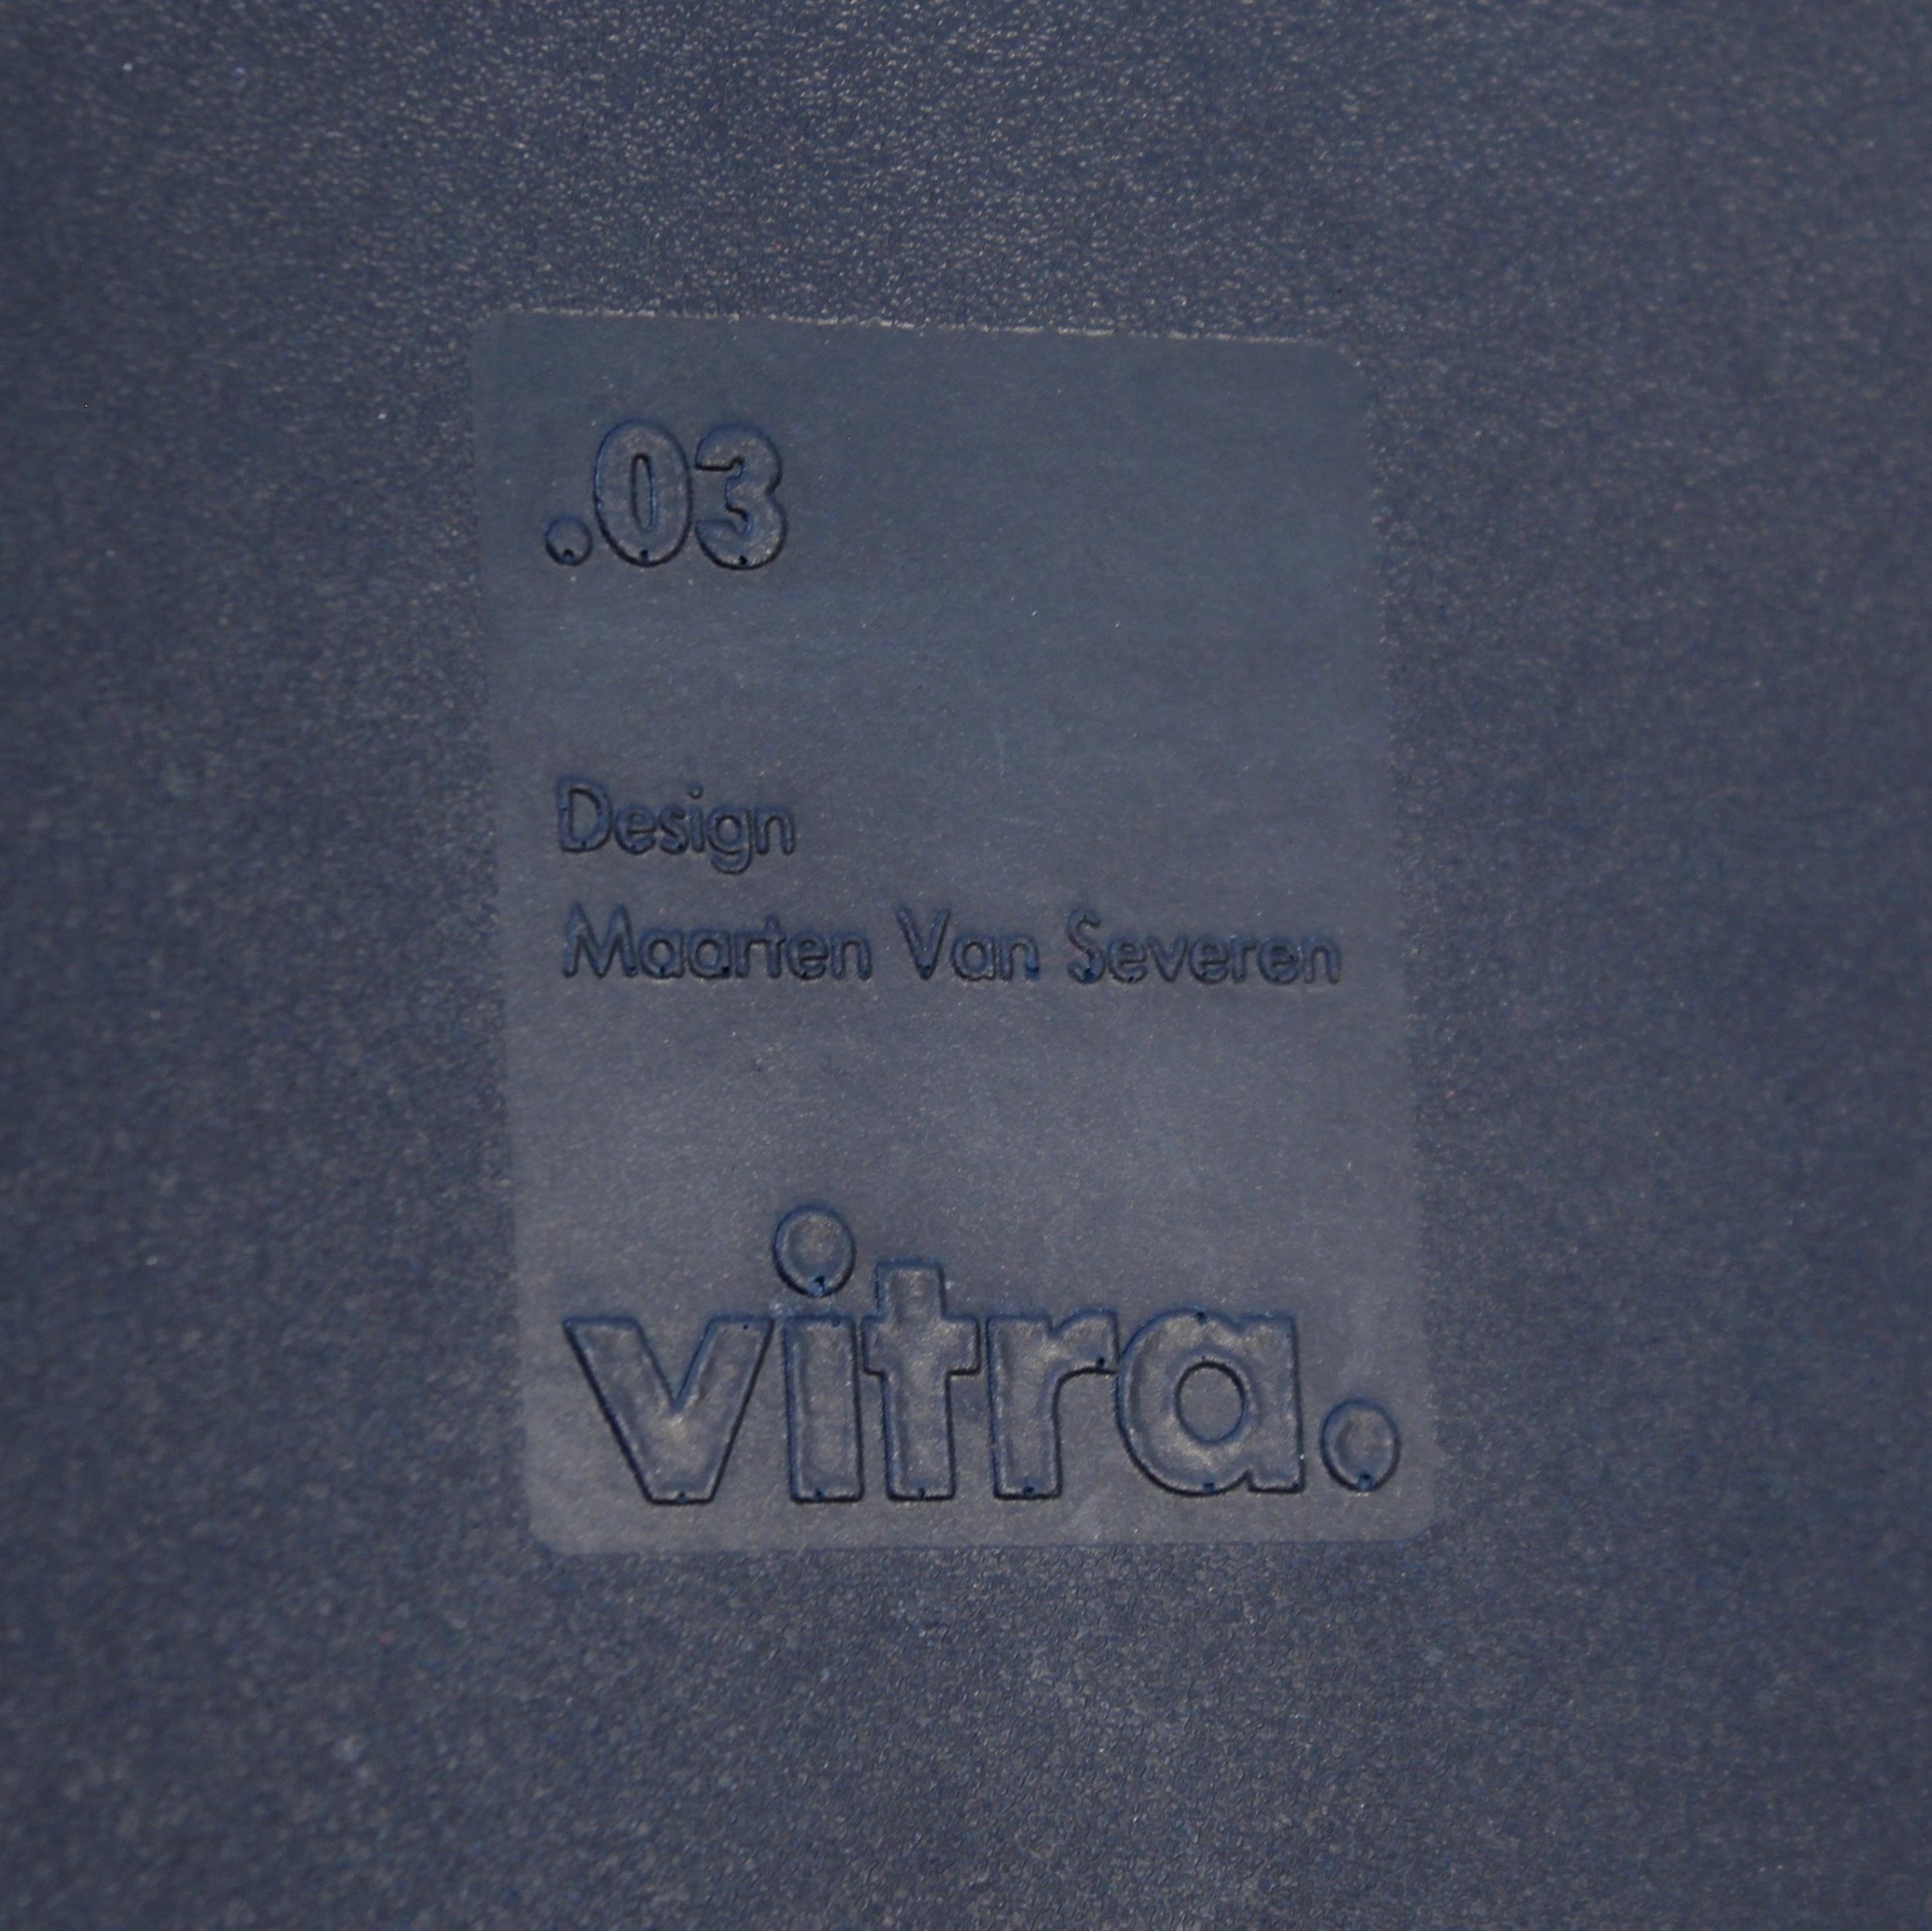 Maarten Van Severen, .03 chair by Vitra, 1998 3